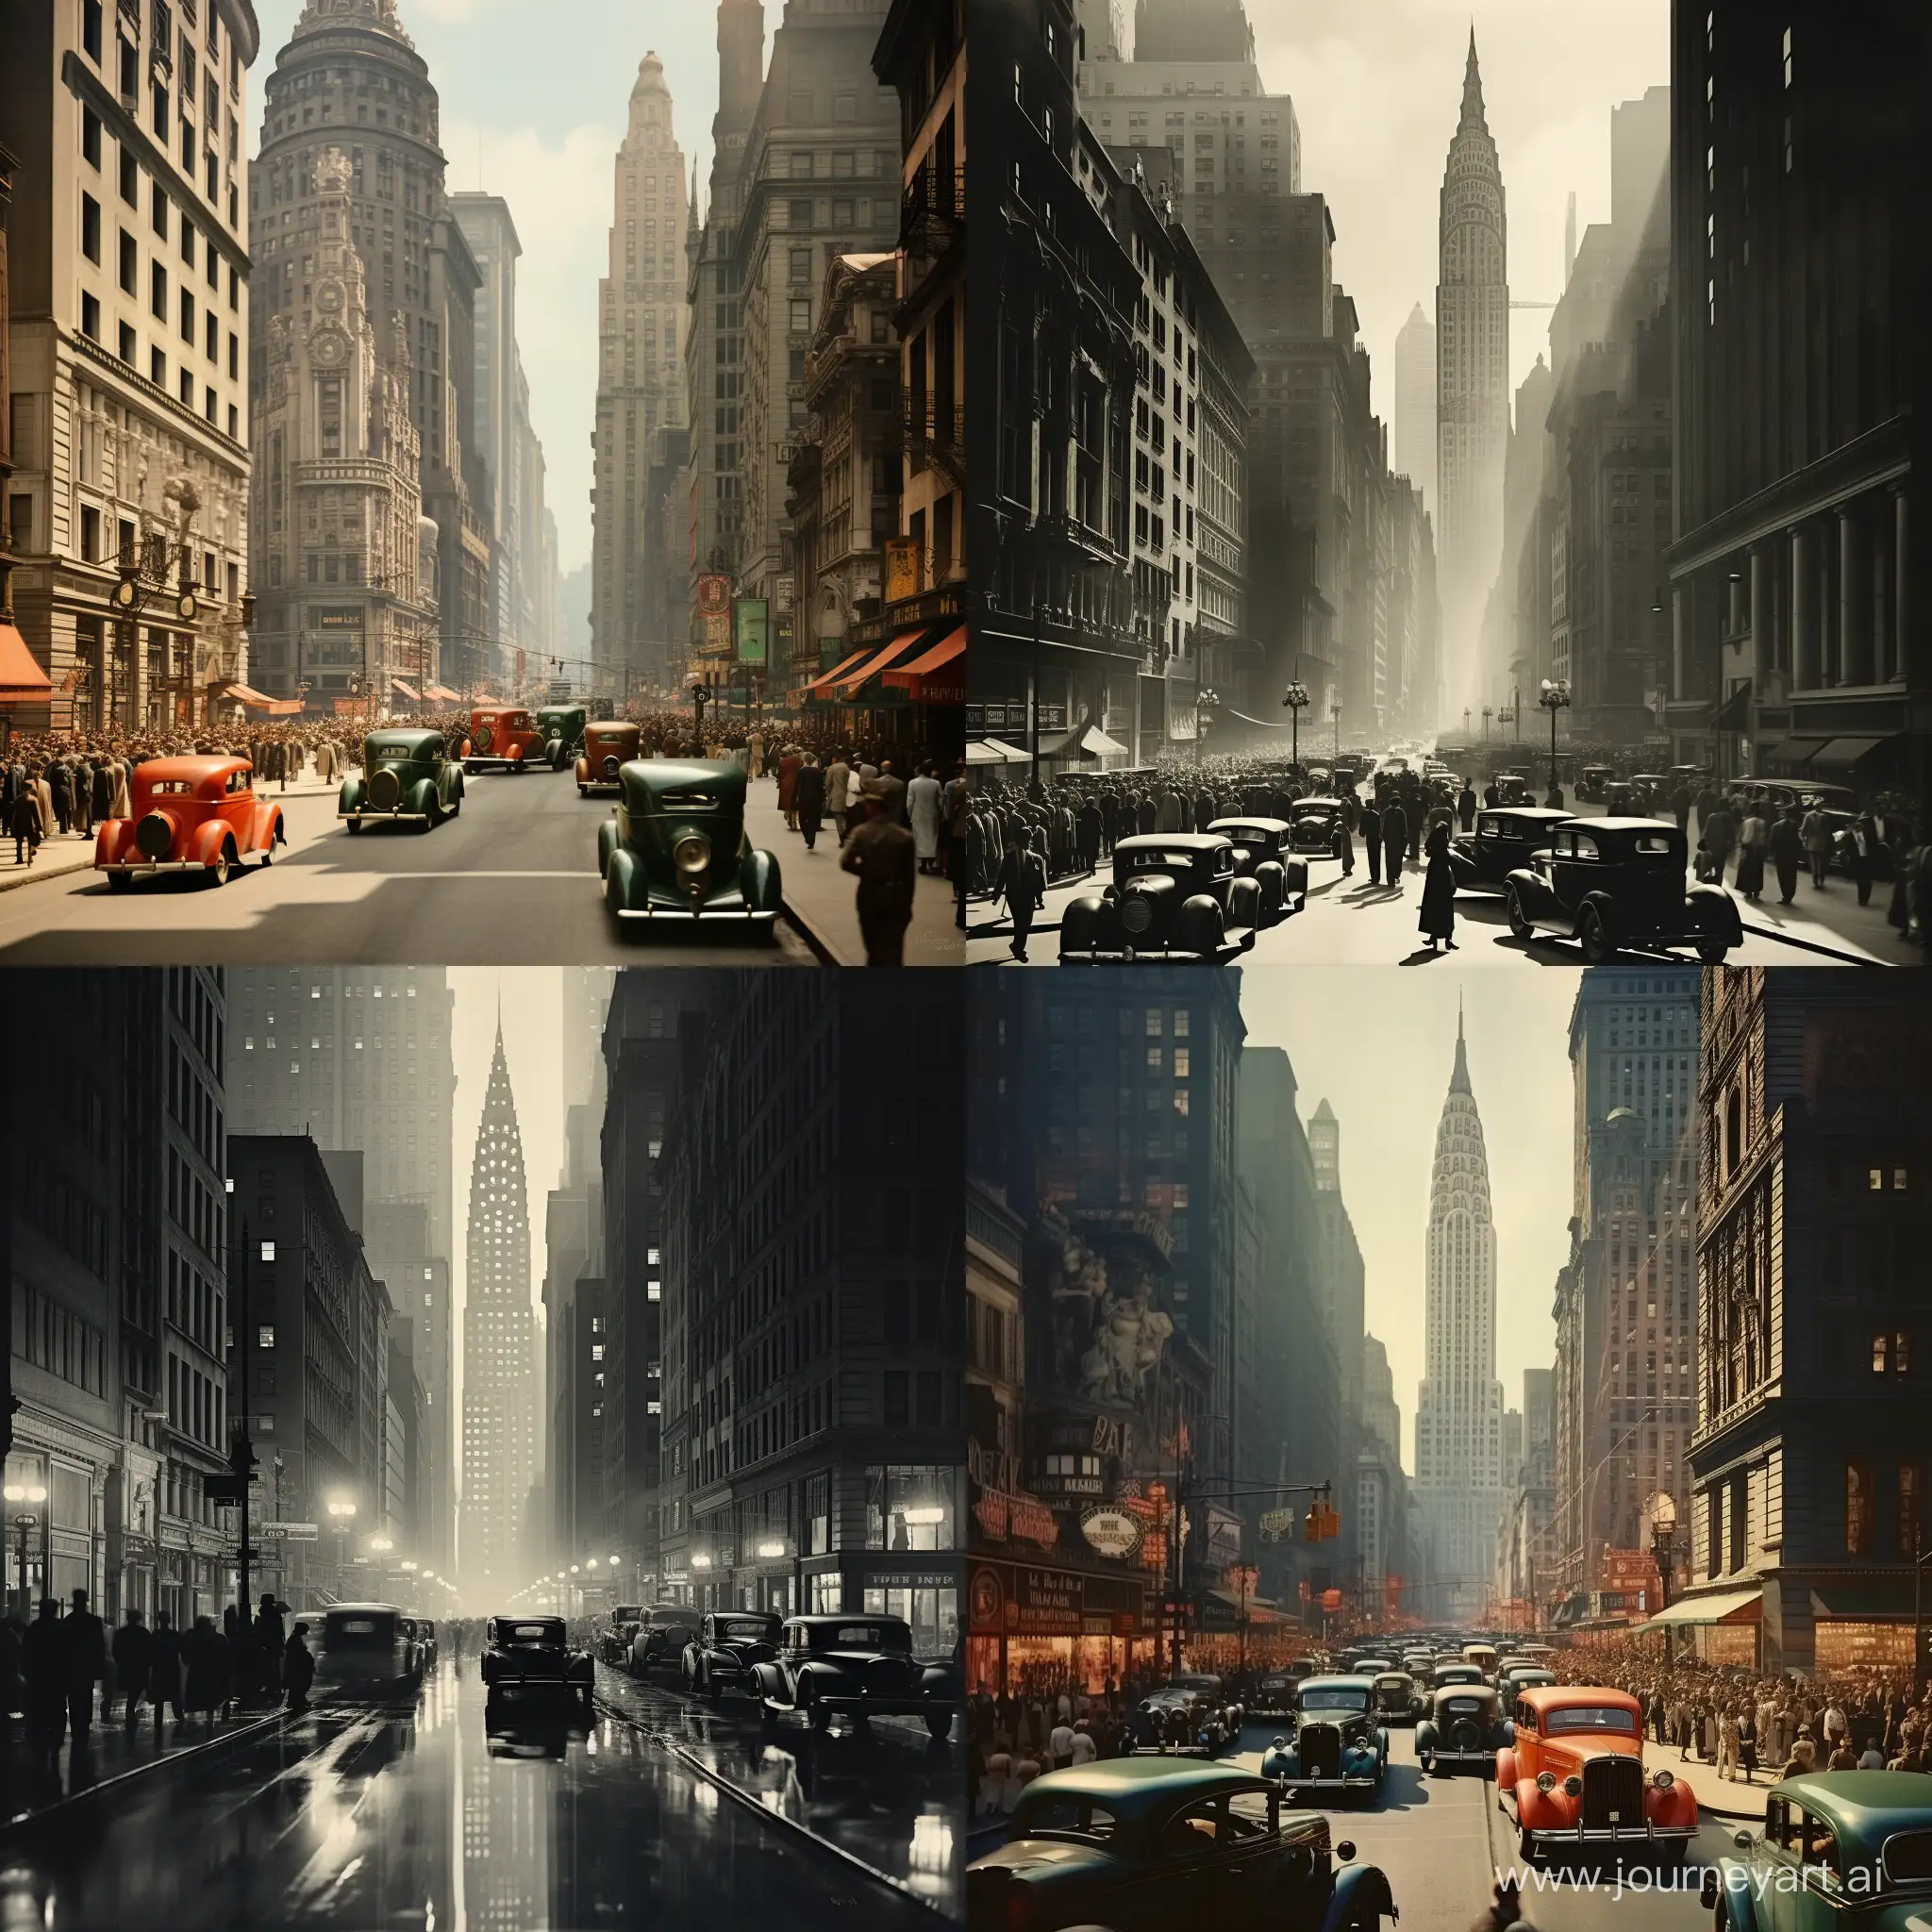 1930s-New-York-Street-Scene-in-Square-Format